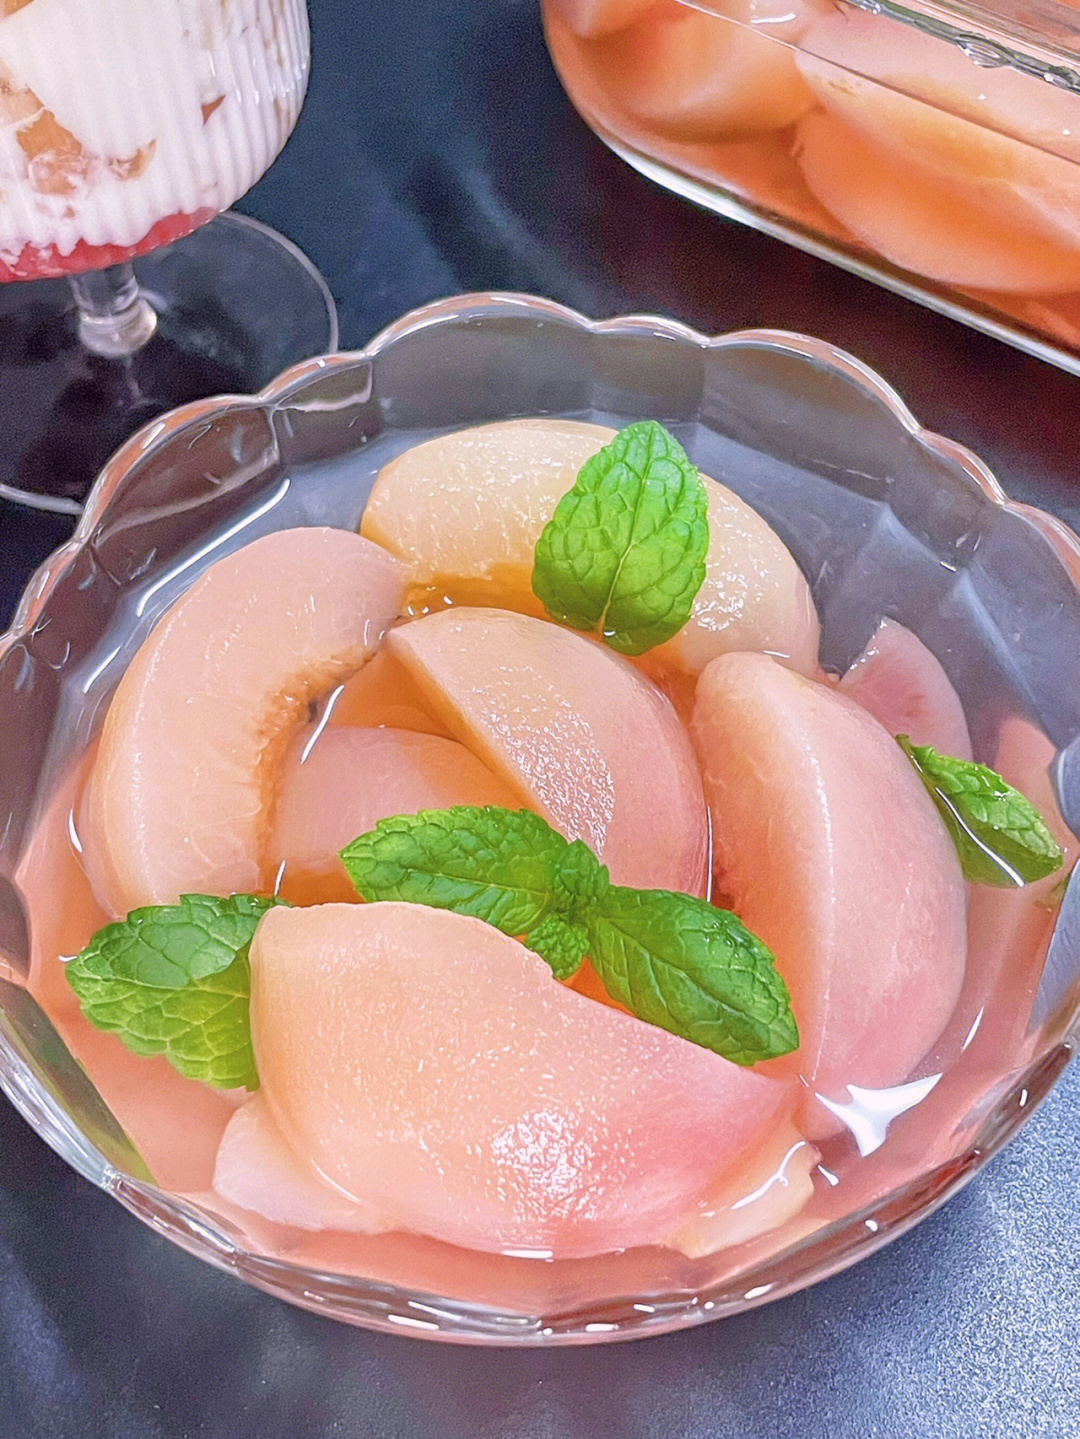 又是一年蜜桃季,不研究几个吃法都觉得对不起桃子的美味食材:水蜜桃